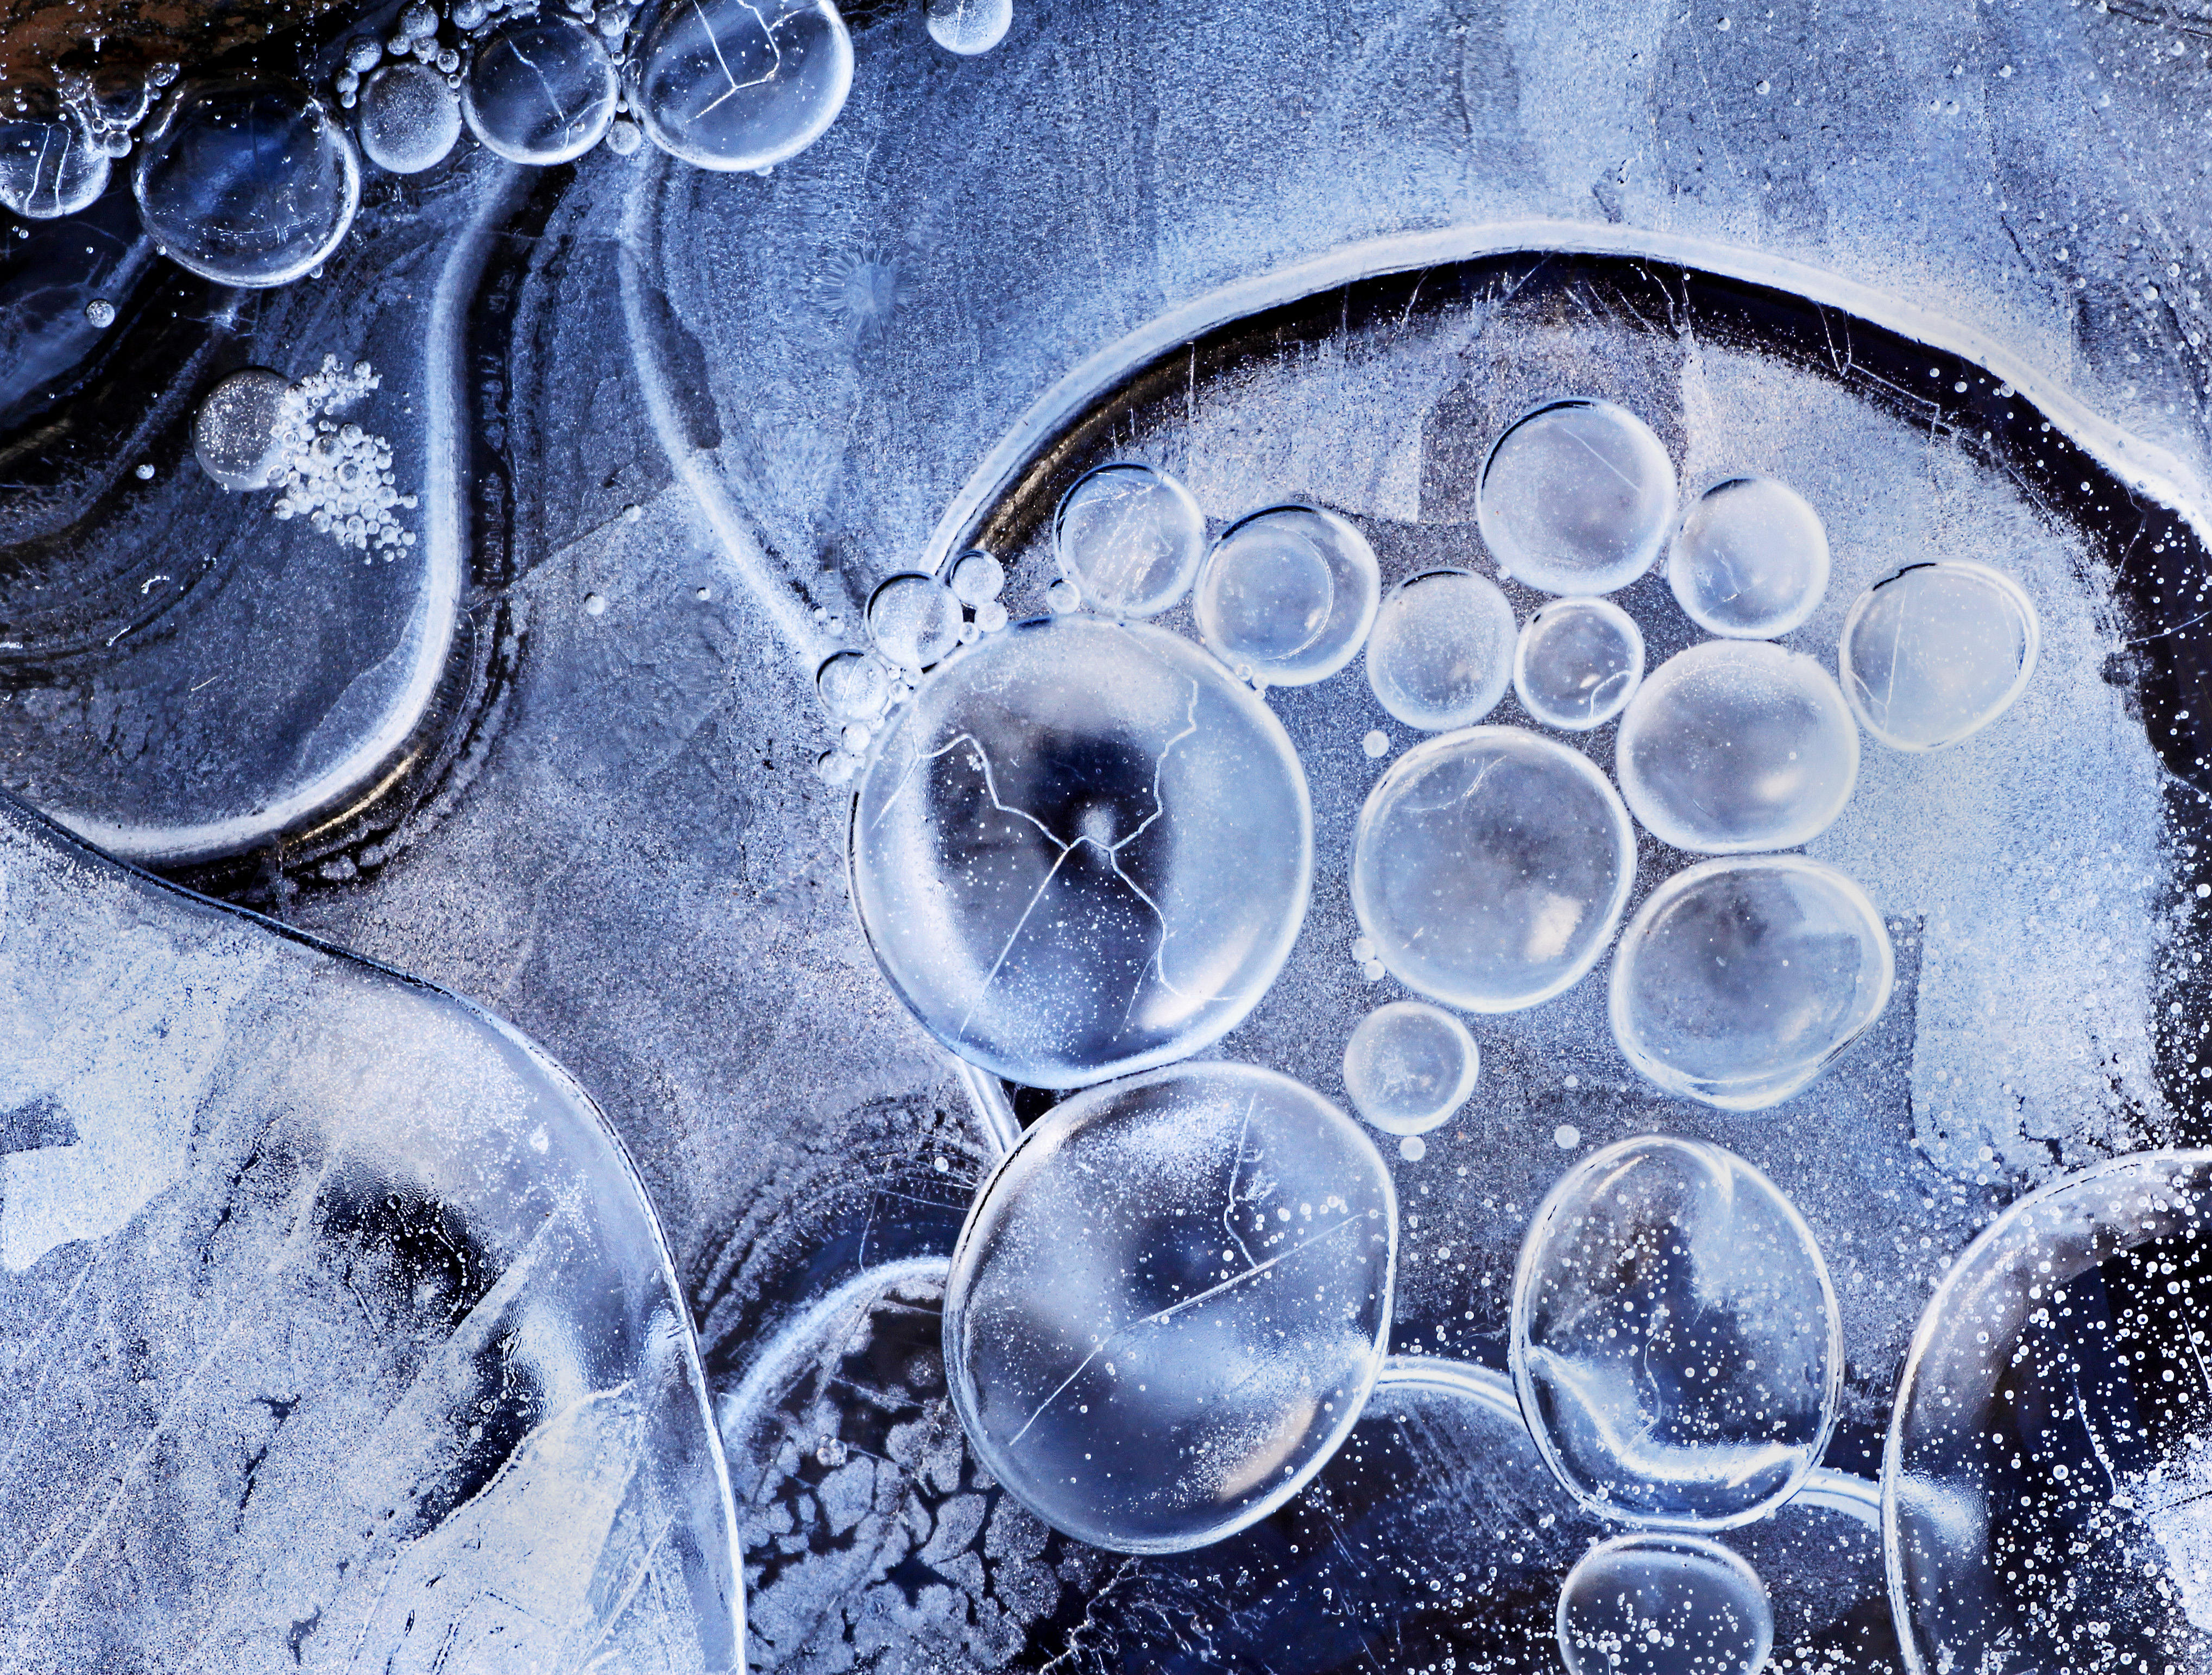 'Frozen Bubbles' by Carolyn Derstine